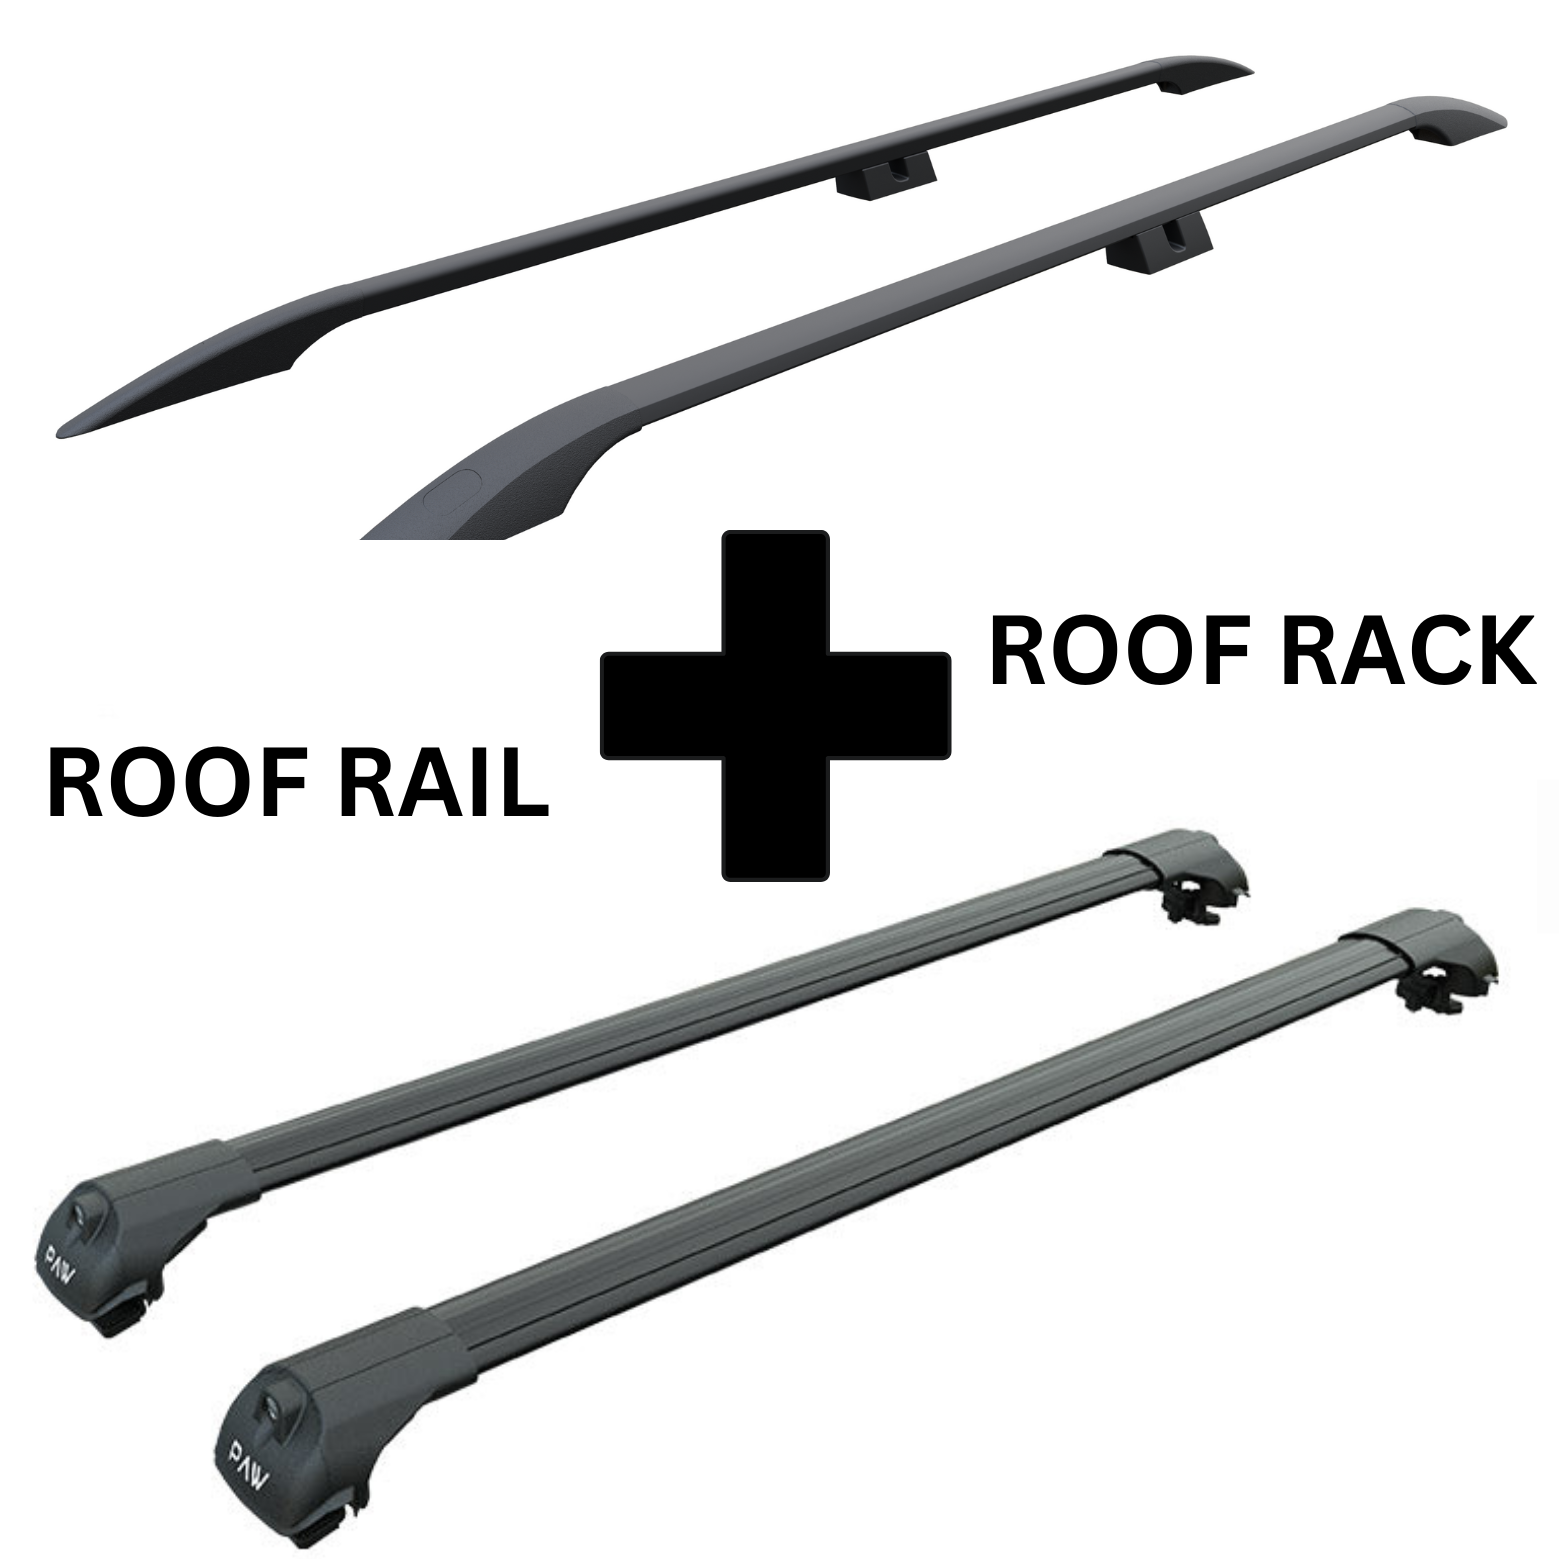 For Volkswagen Caddy V 2020-Up Roof Side Rails and Roof Rack Cross Bar Alu Black